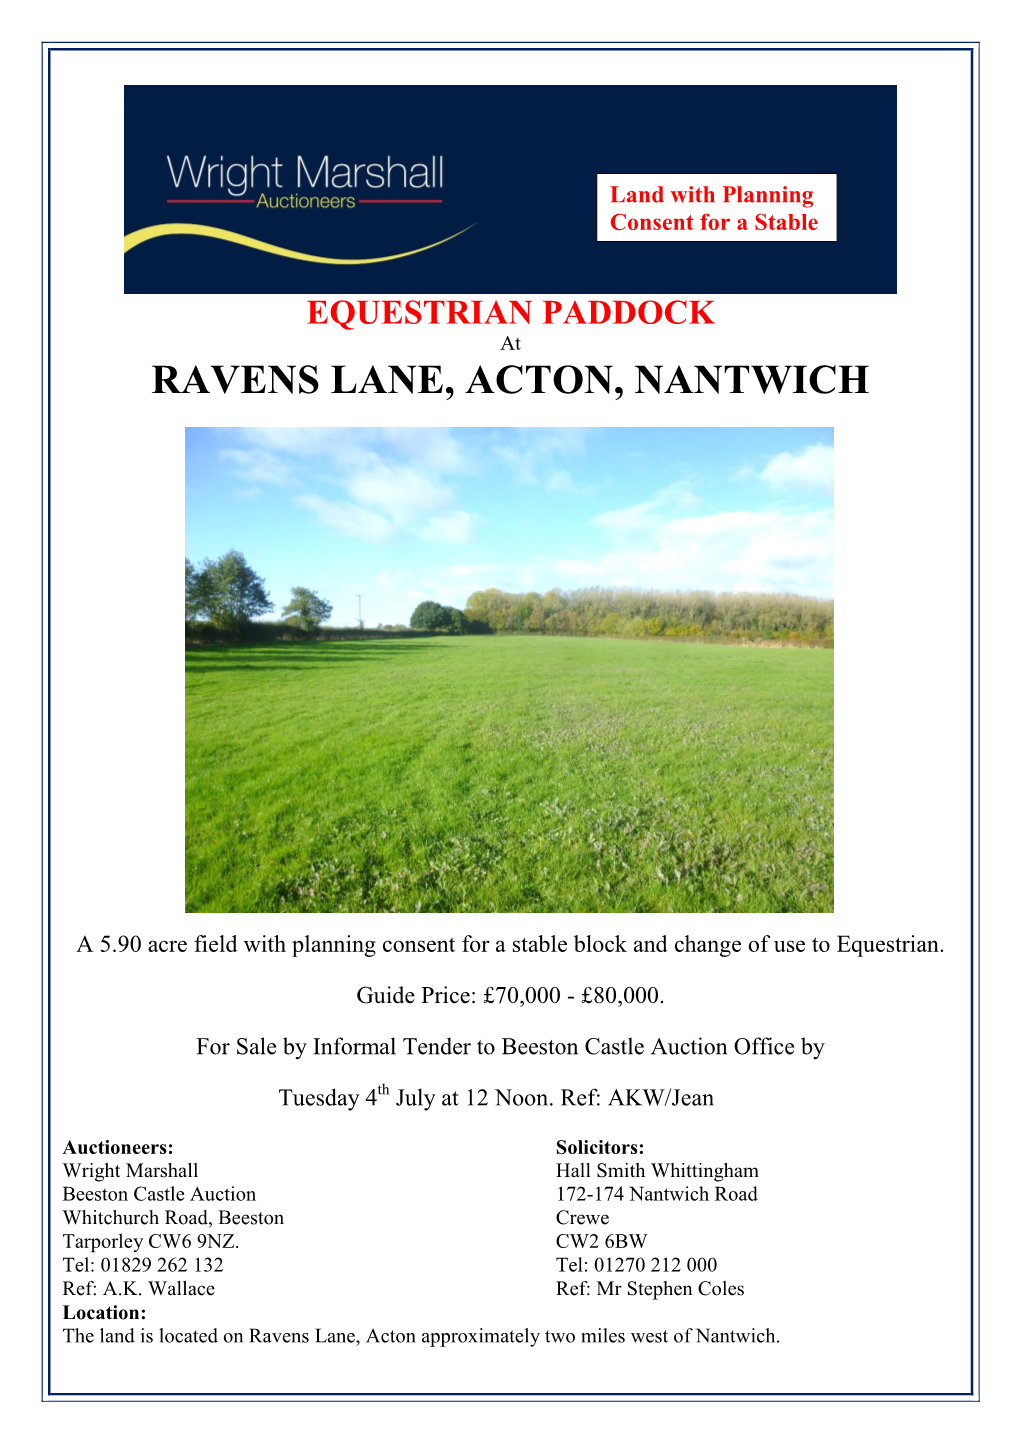 Ravens Lane, Acton, Nantwich